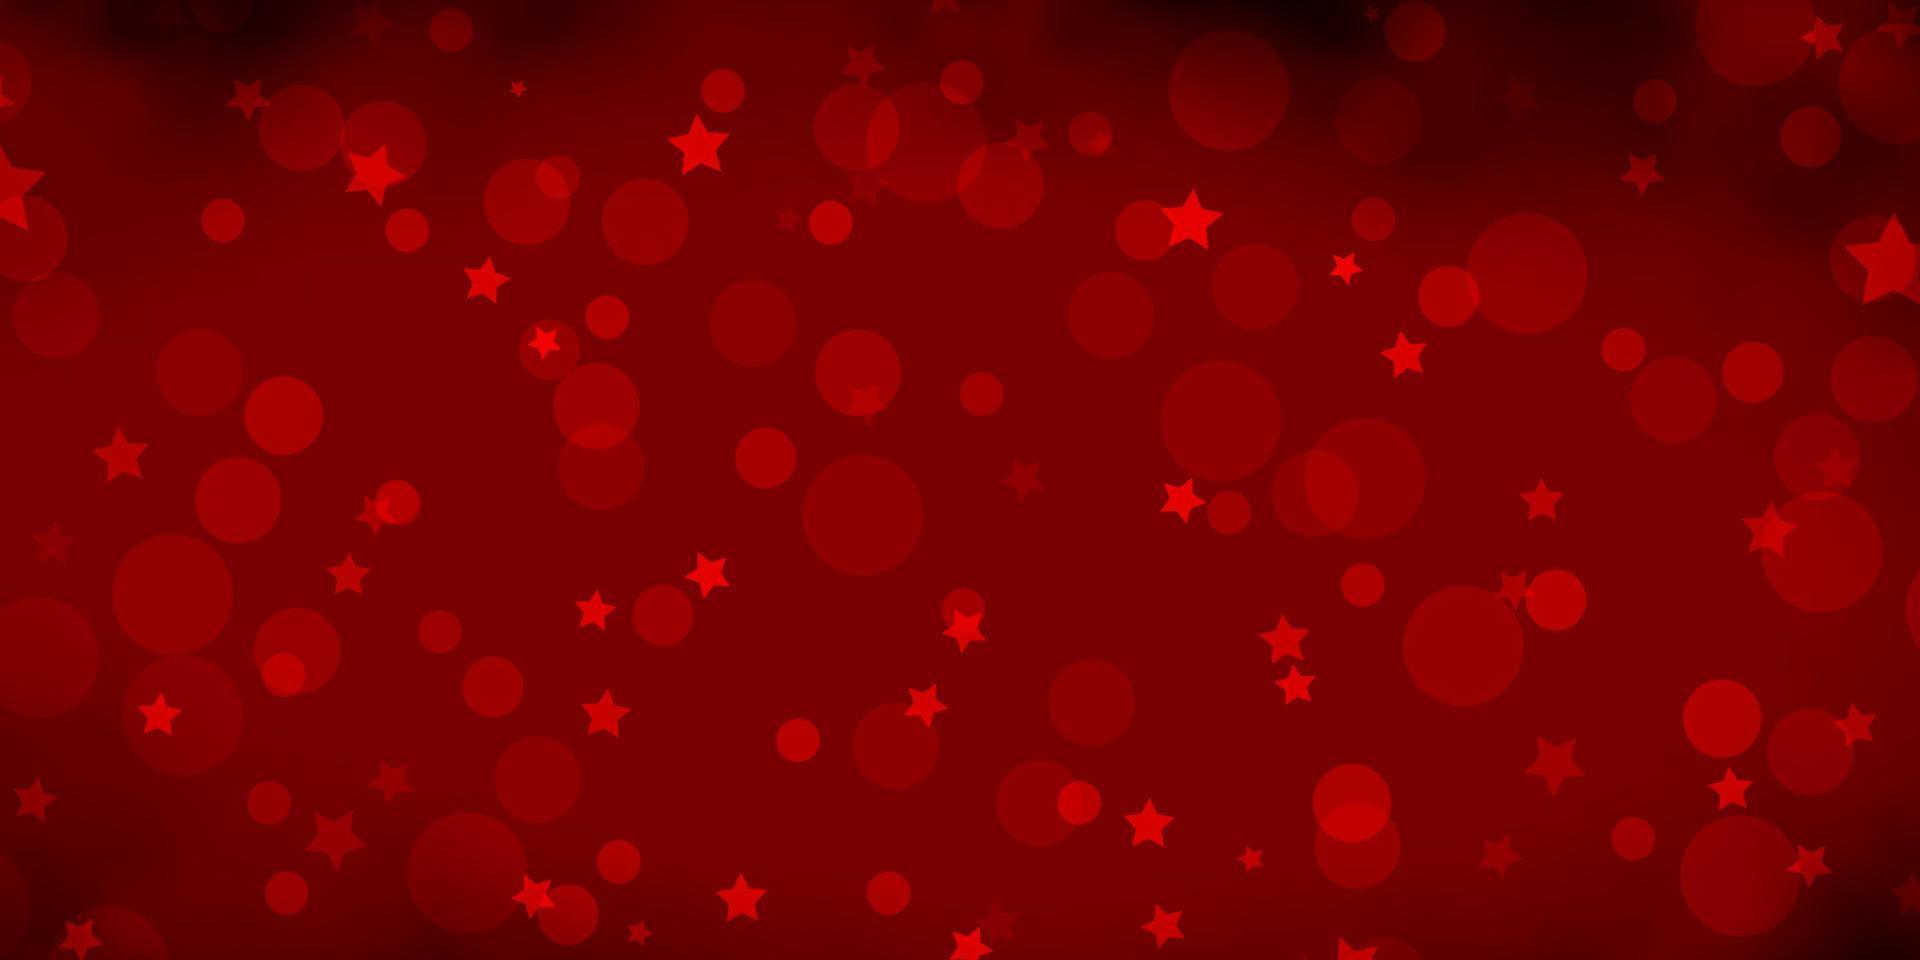 plantilla de vector rojo oscuro con círculos, estrellas.